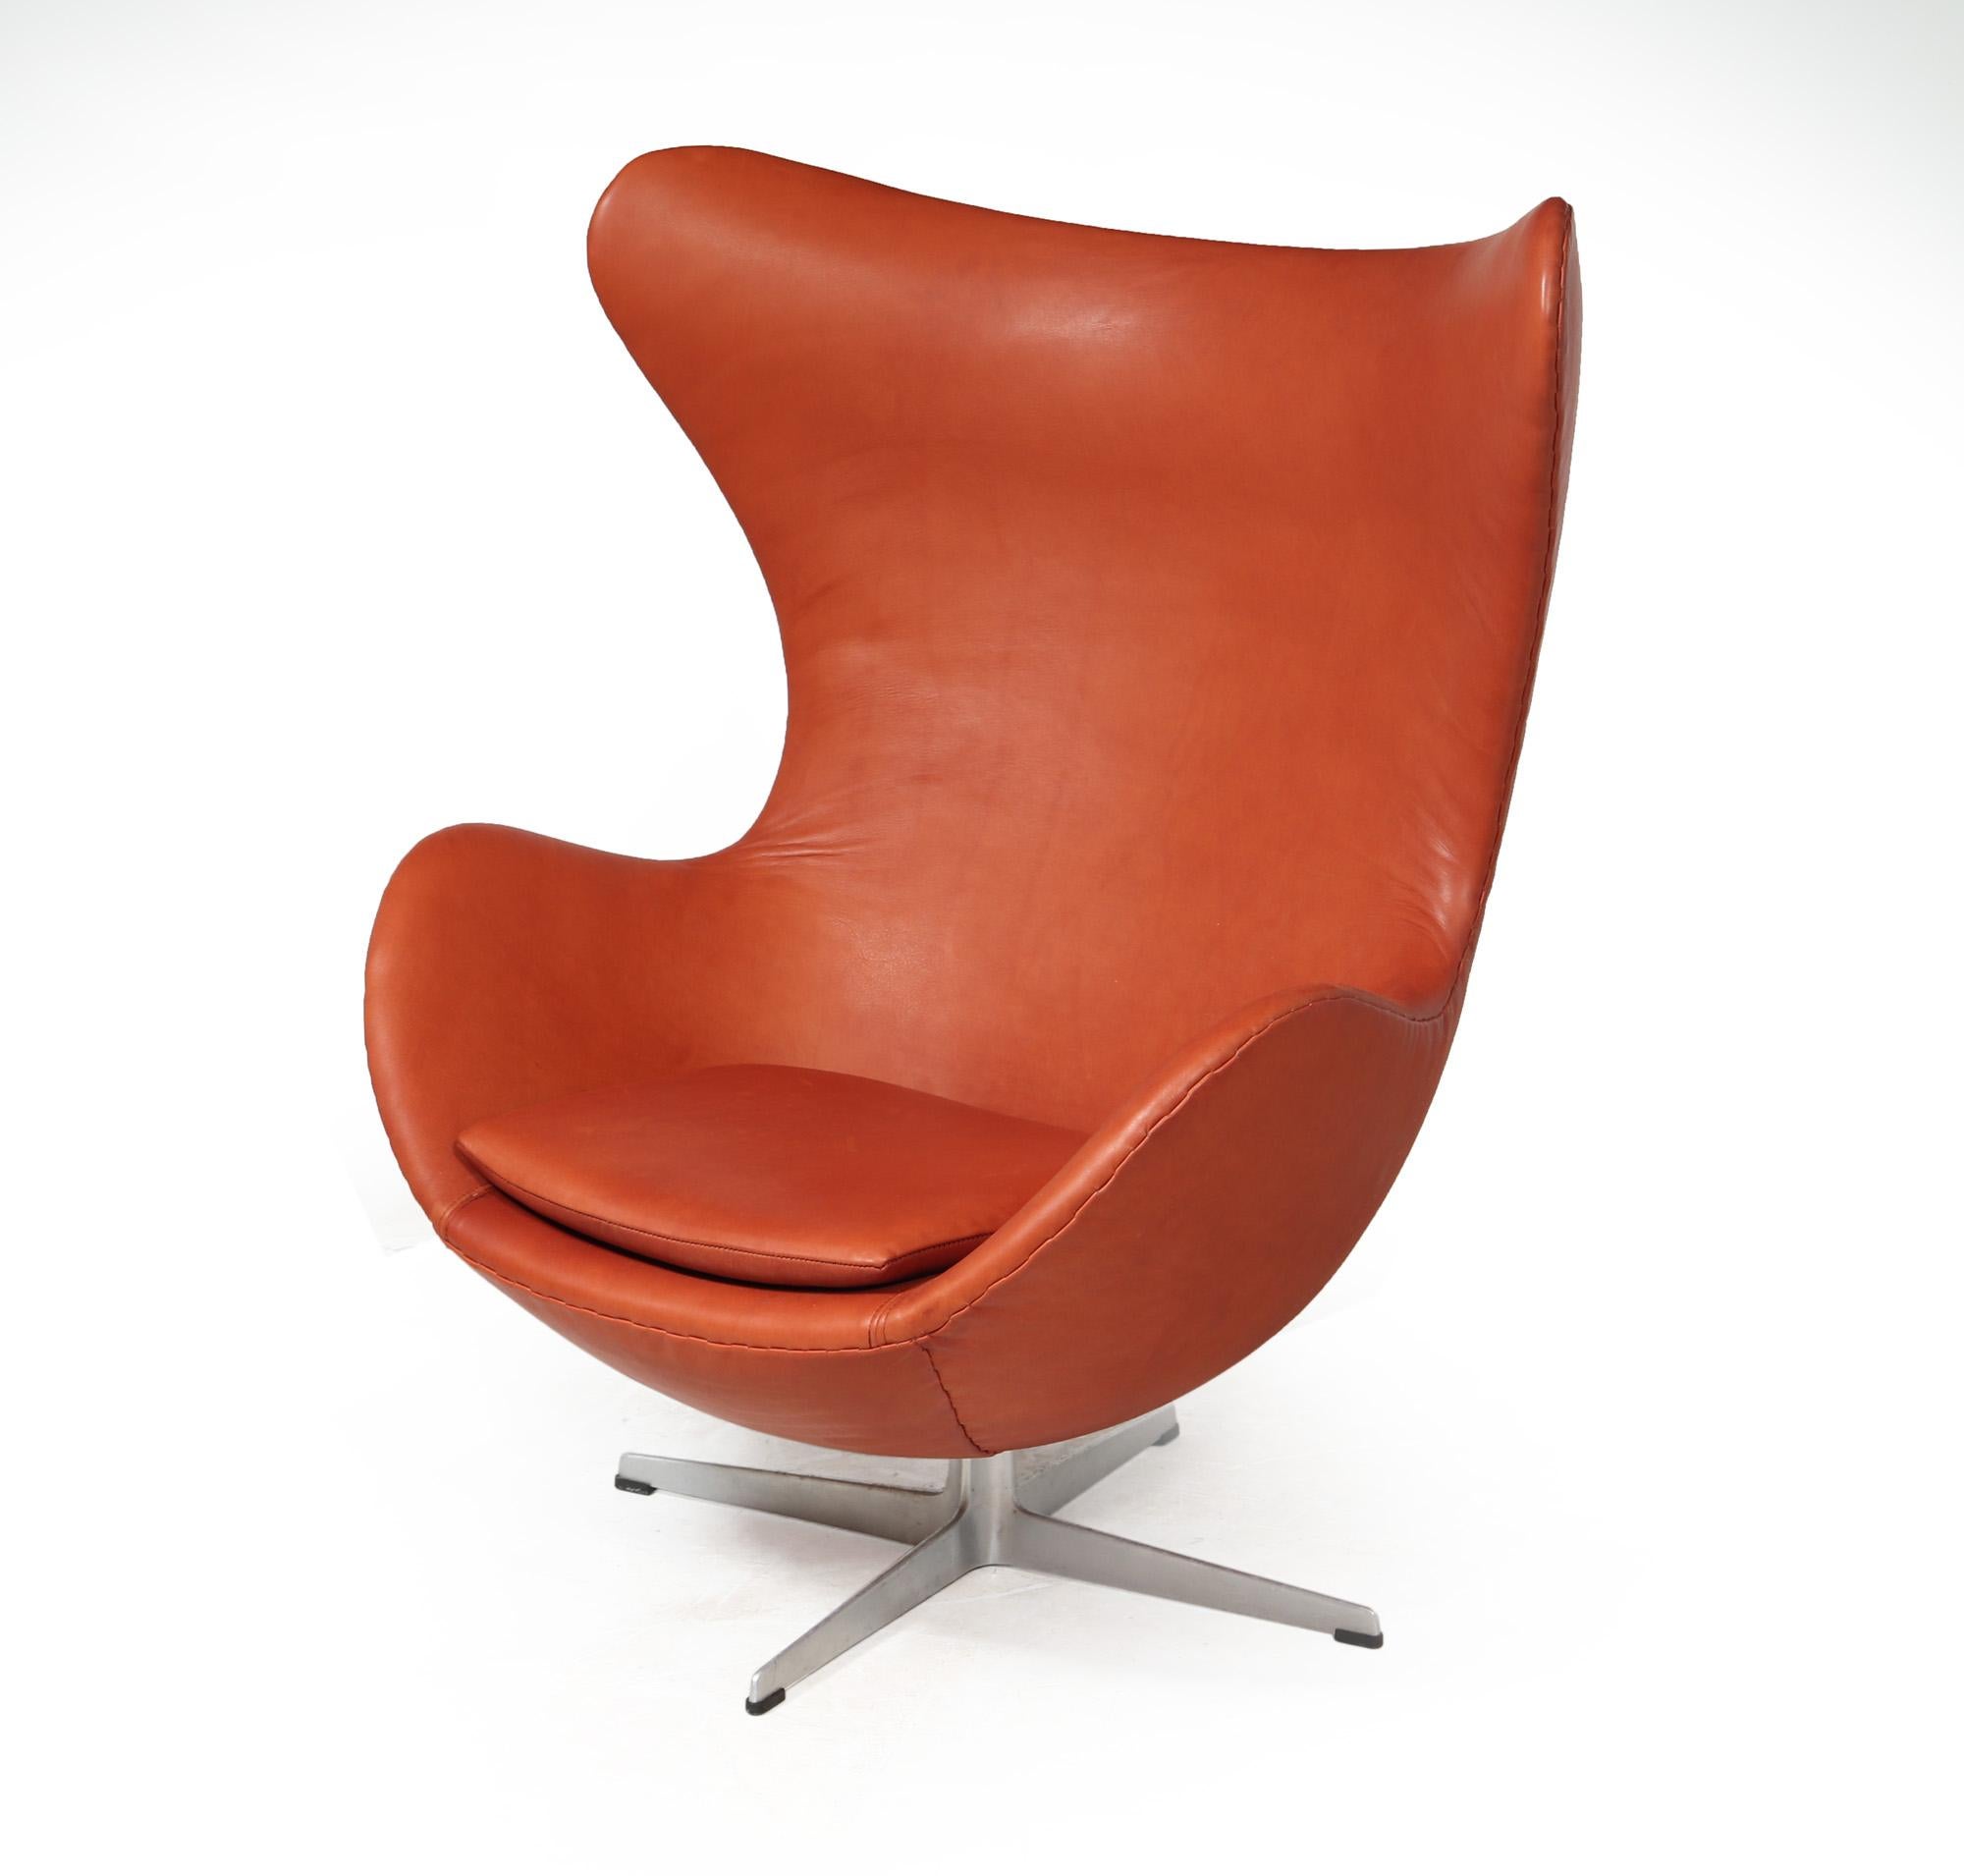 FAUTEUIL EGG DE FRITZ HANSEN
Voici l'emblématique fauteuil Egg, un design intemporel d'Arne Jacobsen datant de 1966. Ce chef-d'œuvre récemment retapissé est recouvert de cuir Nappa italien, méticuleusement cousu à la main selon les techniques